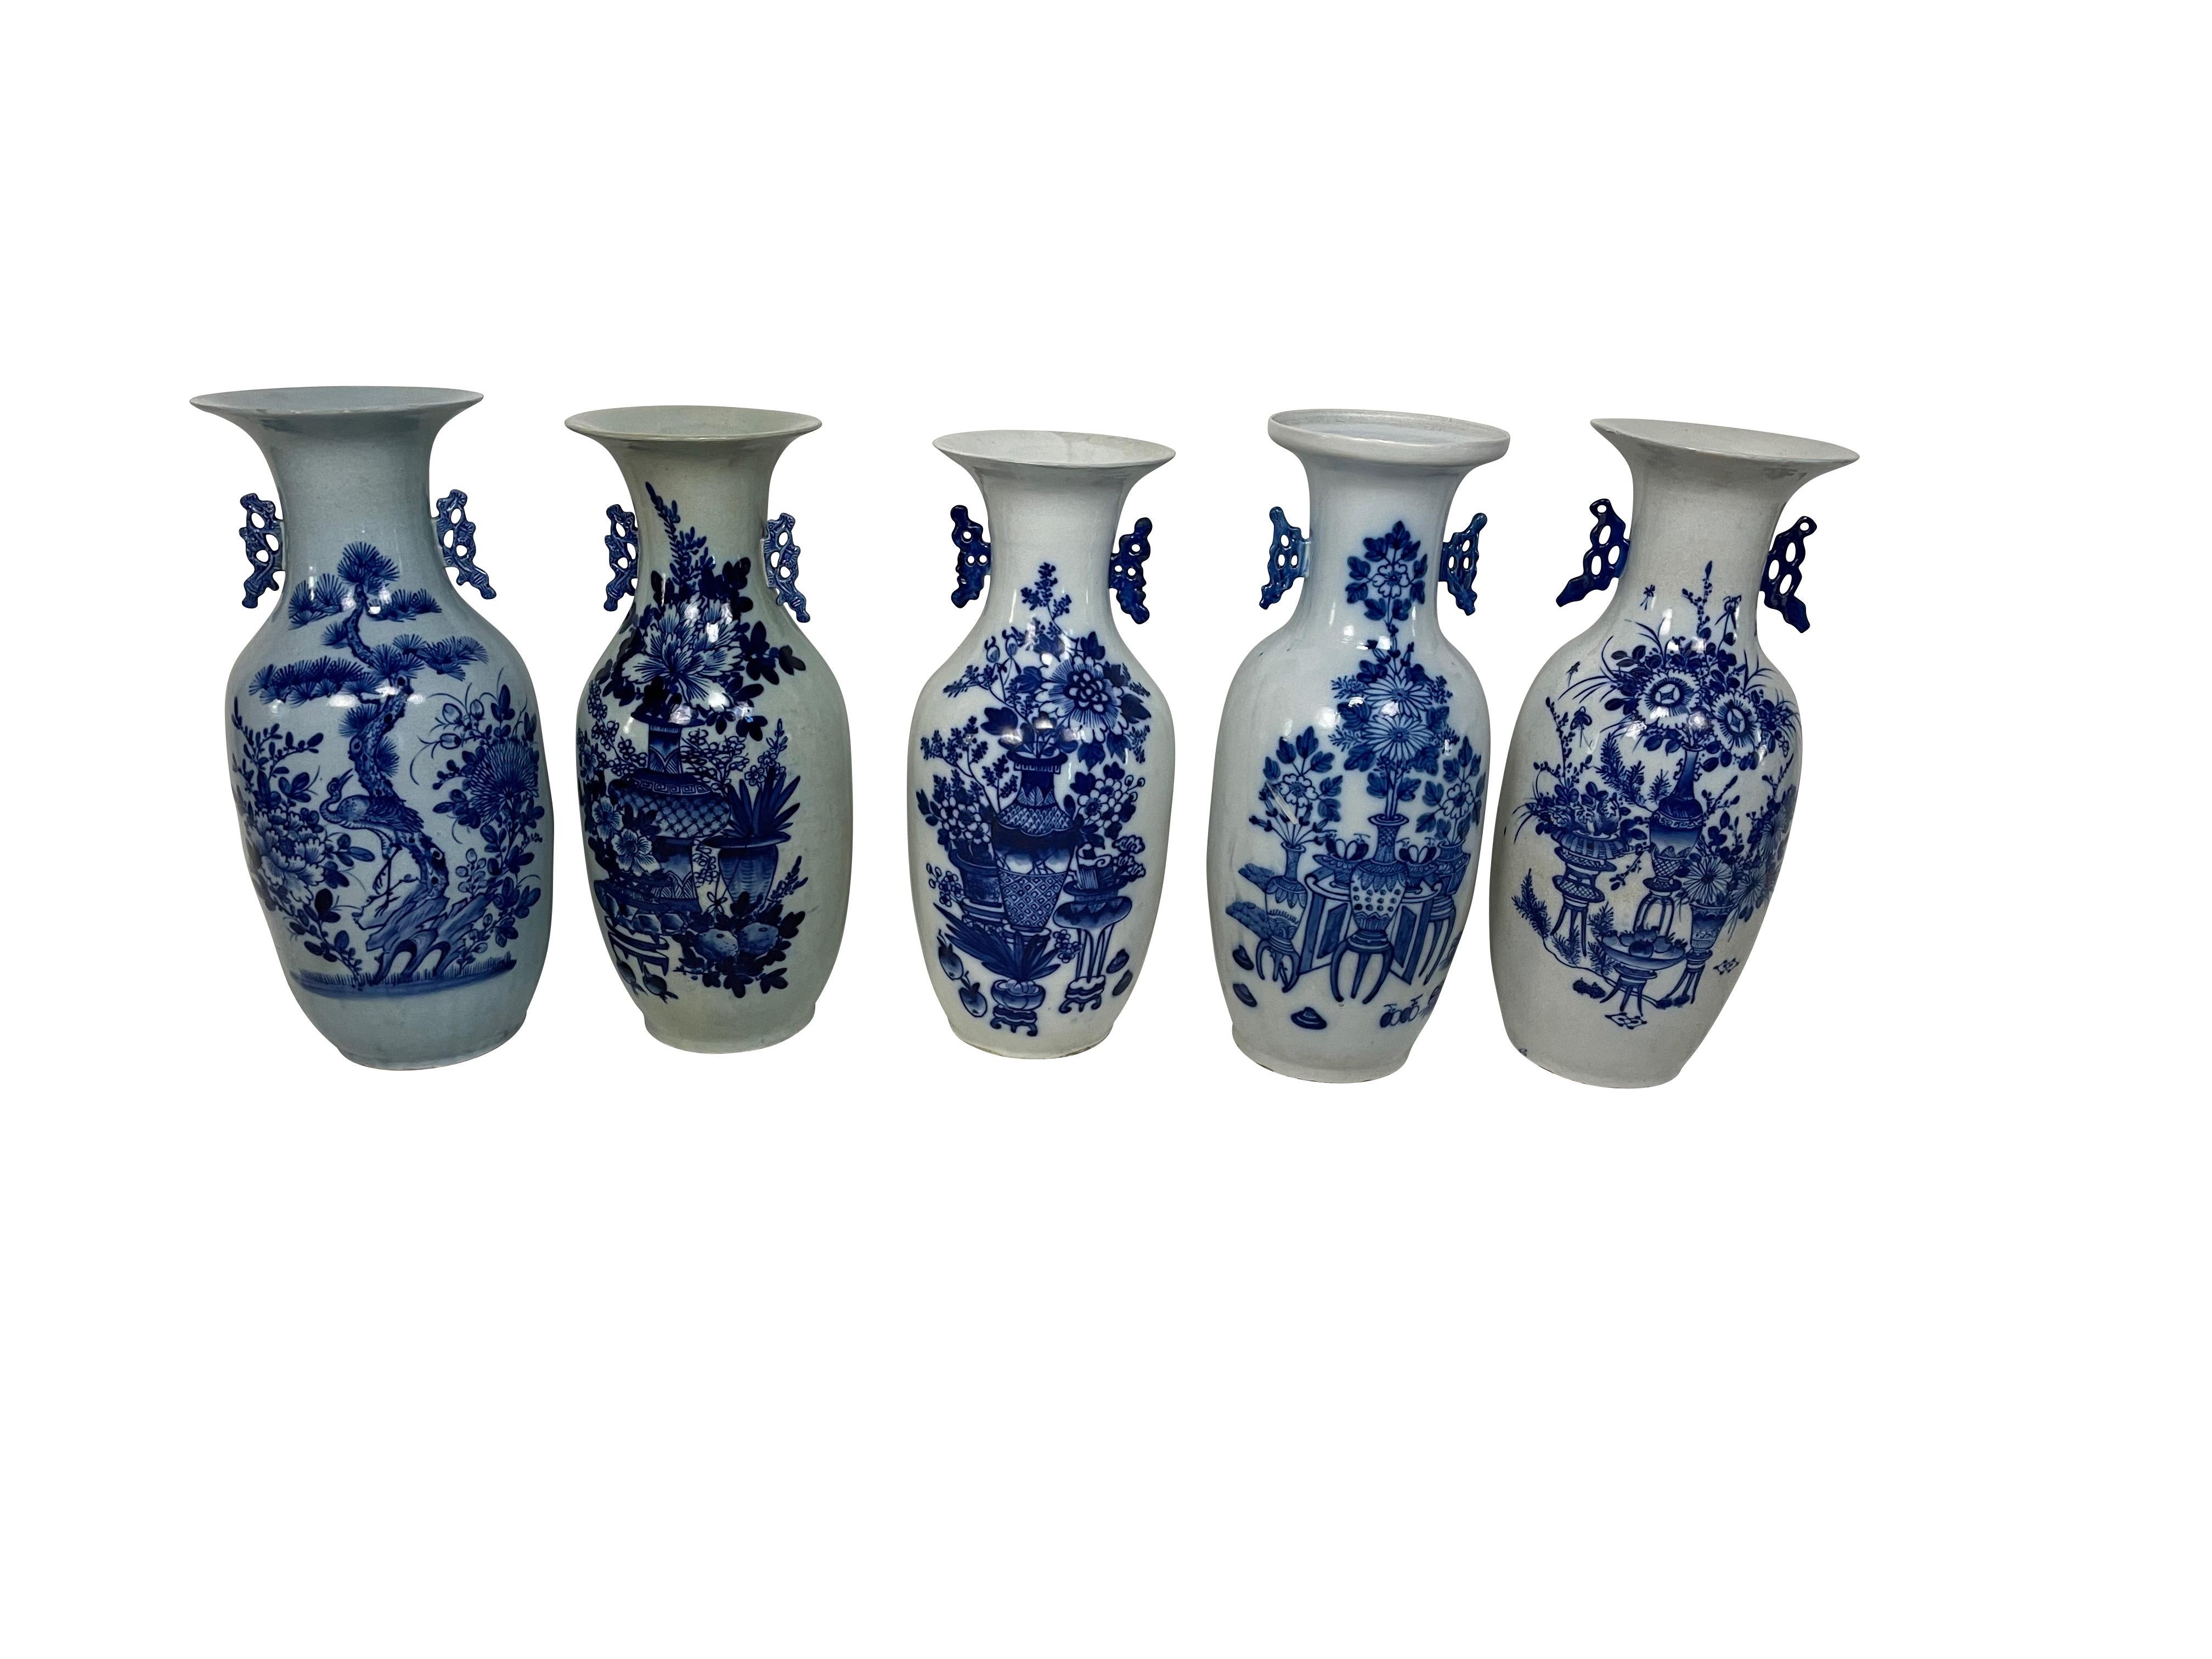 Une collection de grands vases balustres en porcelaine chinoise ancienne, décorés de diverses fleurs et objets en bas-relief et décorés en bleu sous glaçure dans un fond émaillé blanc. Le vase possède des poignées stylisées moulées de part et